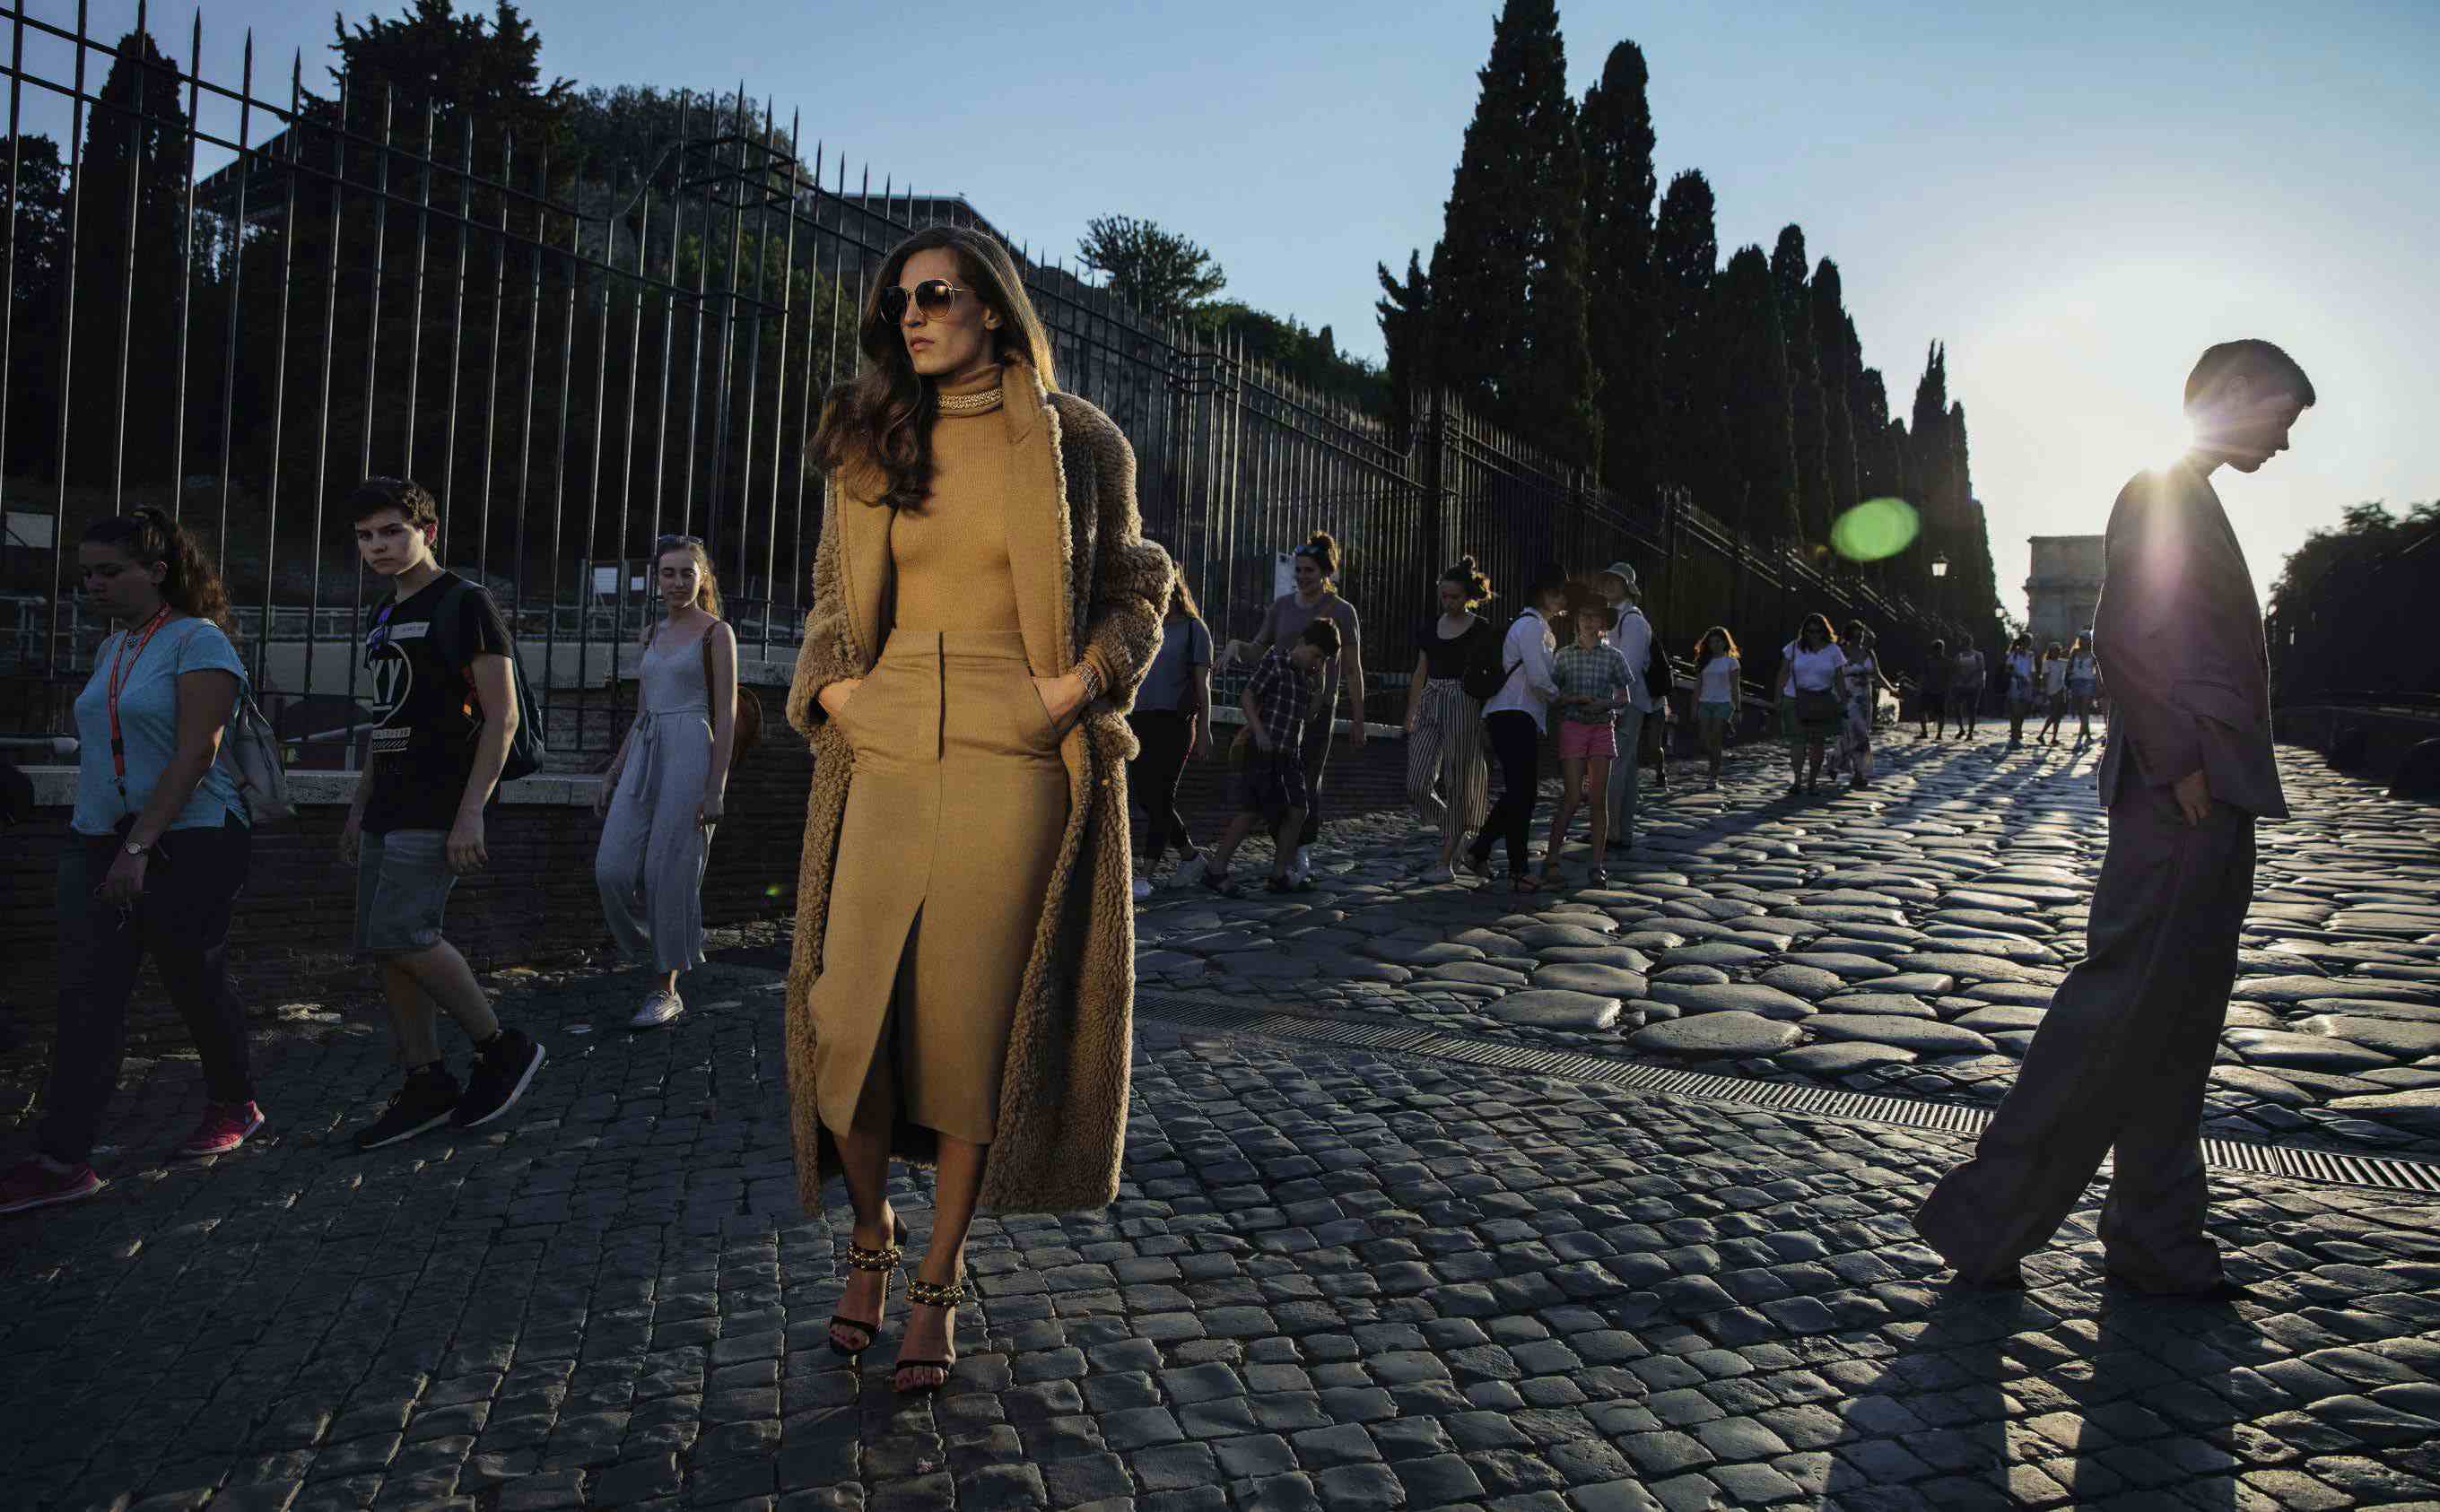 VOGUE ITALIA - September 2017
Photographer: Inez & Vinoodh
Model: Mariacarla Boscono, Saskia De Brauw, Othilia Simon
Stylist: Alex White
Location: Rome, Italy